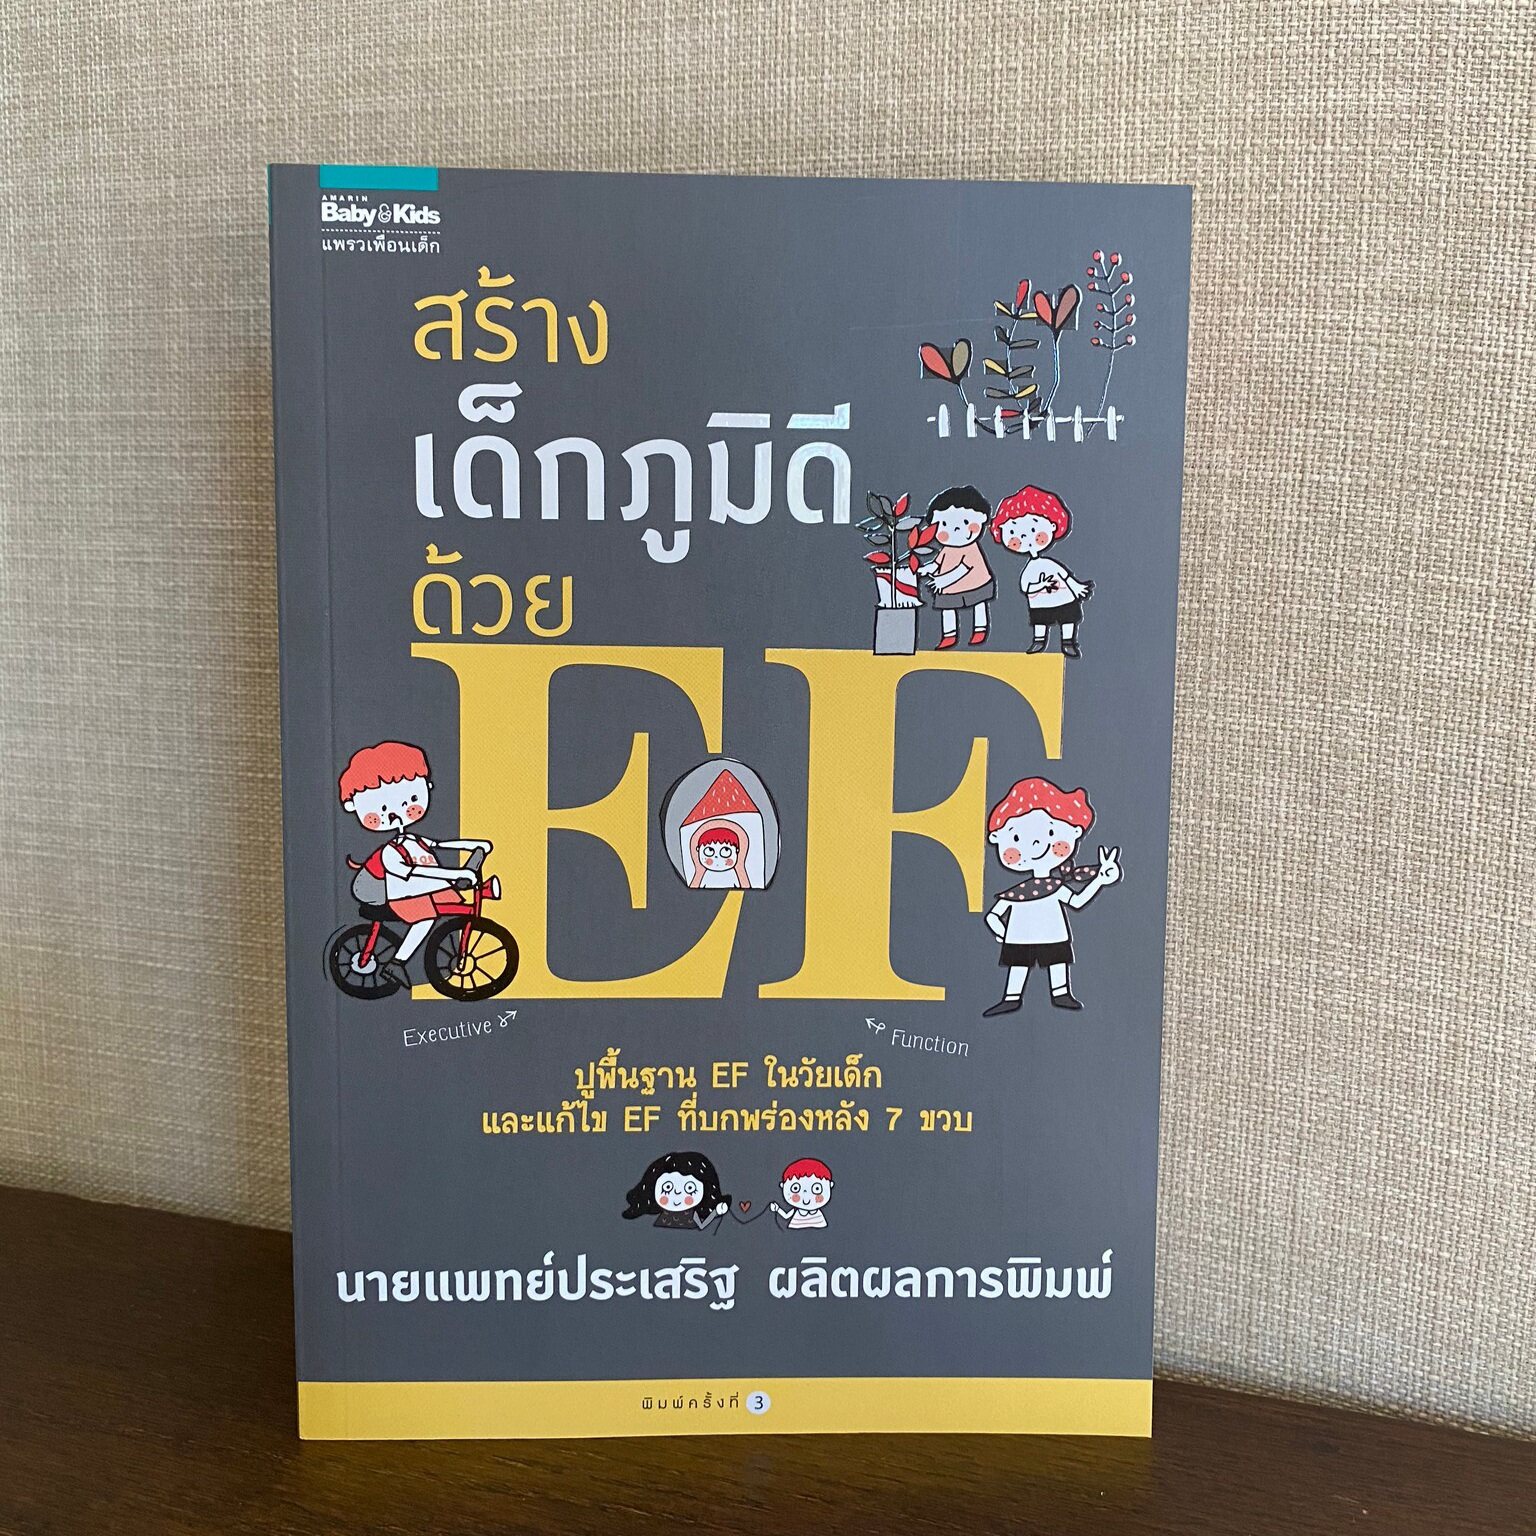 สร้างเด็กภูมิดีด้วย EF หนังสือของ คุณหมอประเสริฐ ผลิตผลการพิมพ์ เลี้ยงลูก คุณแม่ จากหมูสามตัวหนังสือเด็ก จากร้าน talkingpen thailand ปากกาพูดได้